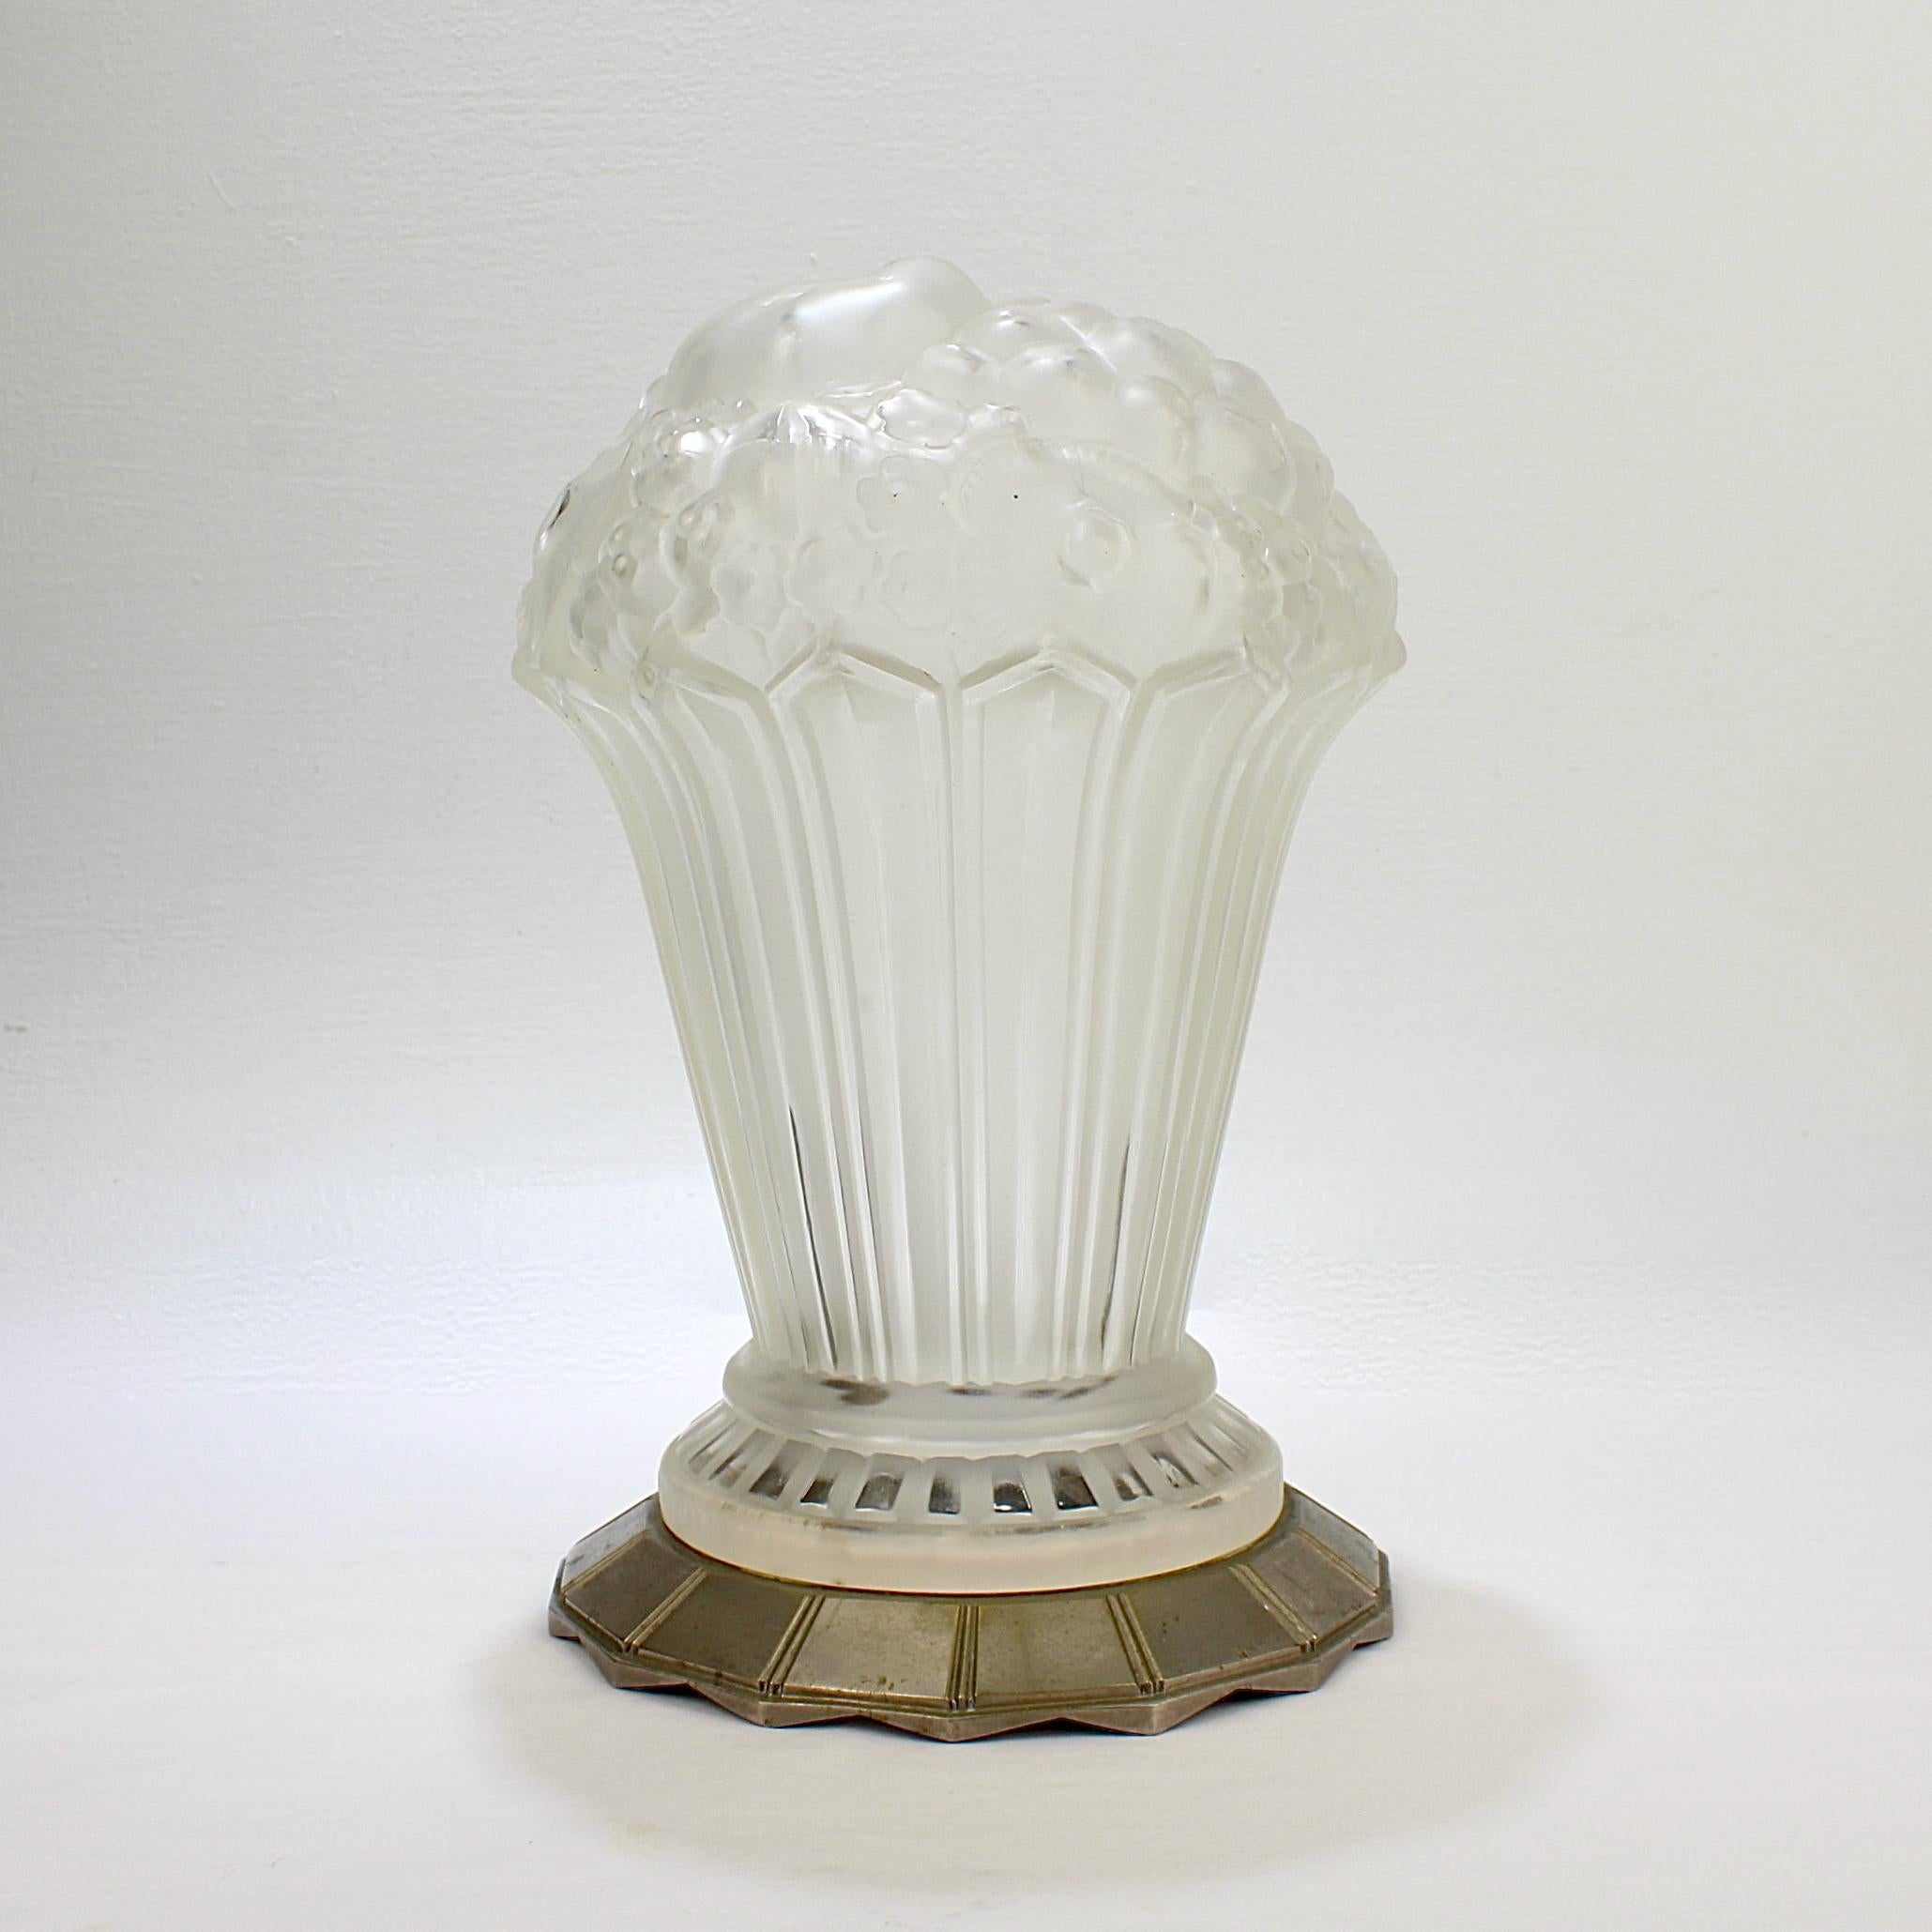 Ein außerordentlich schöner und seltener französischer Tischlampenschirm aus Kunstglas.

Der Schirm ist aus geformtem und gefrostetem Glas in Form eines Blumen- und Fruchtbouquets gefertigt und wird von einem Sockel aus vernickelter Bronze